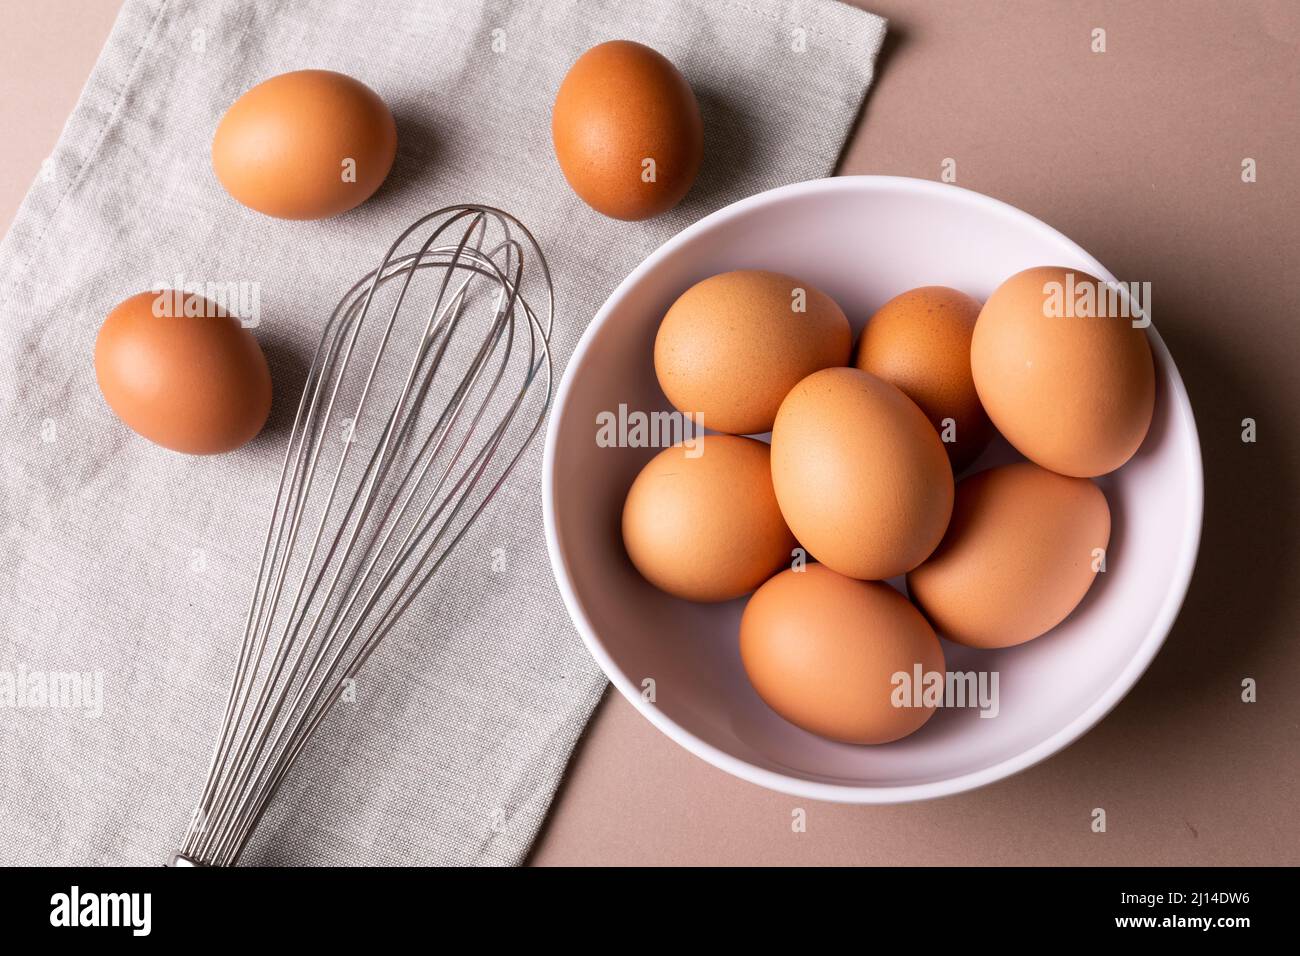 Directement au-dessus de la vue des œufs frais bruns dans un bol, fouetter sur la serviette de table Banque D'Images